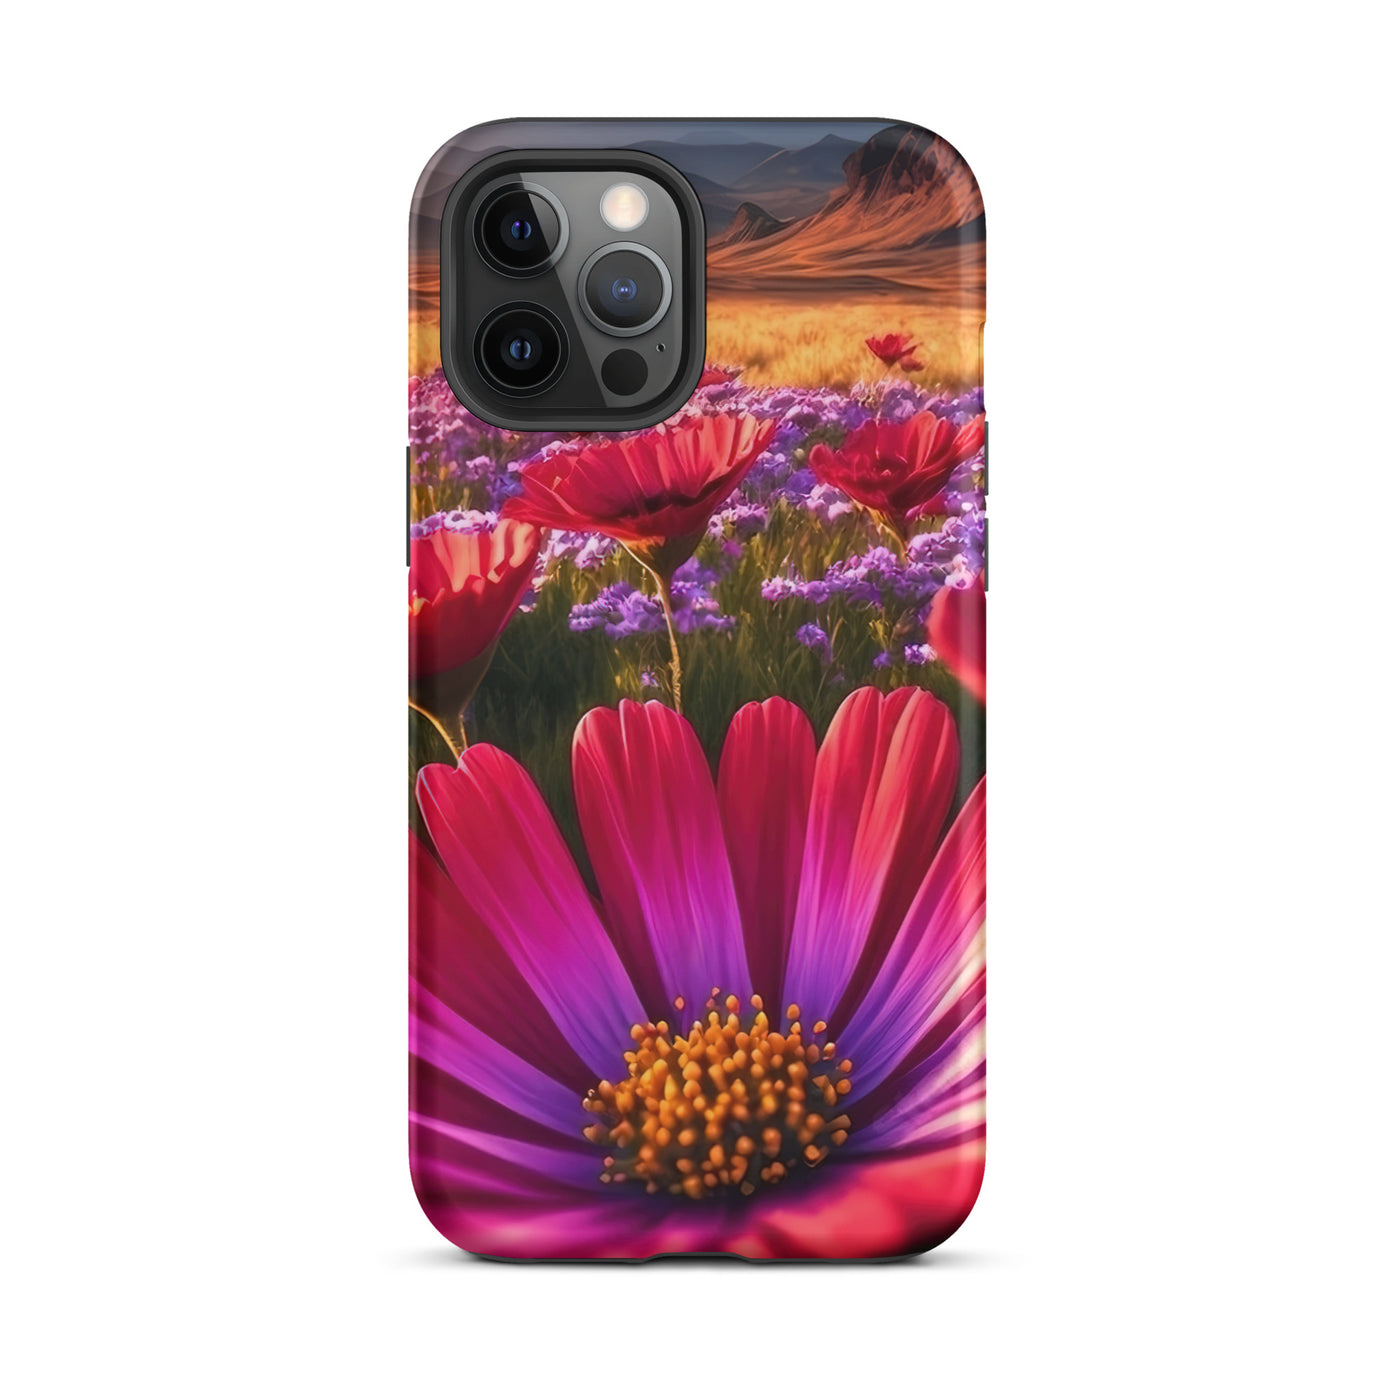 Wünderschöne Blumen und Berge im Hintergrund - iPhone Schutzhülle (robust) berge xxx iPhone 12 Pro Max